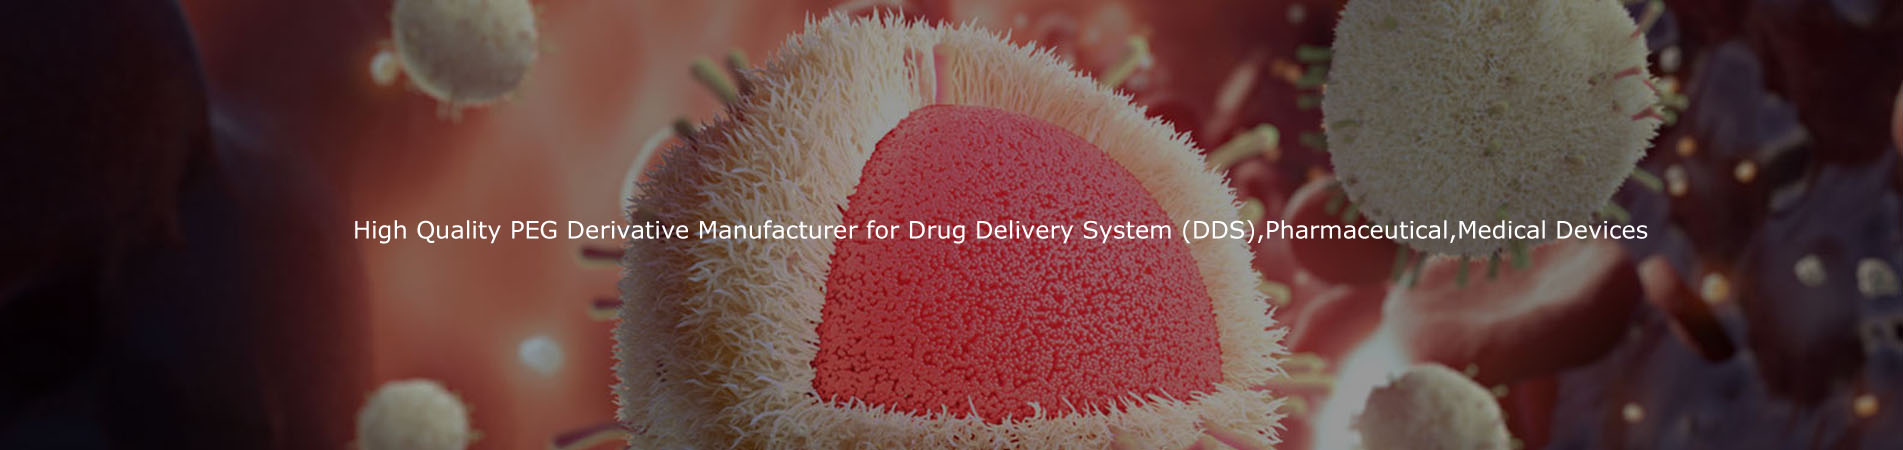 Produttore derivato di PEG di alta qualità per il sistema di consegna della droga (DDS), dispositivi farmaceutici, medici